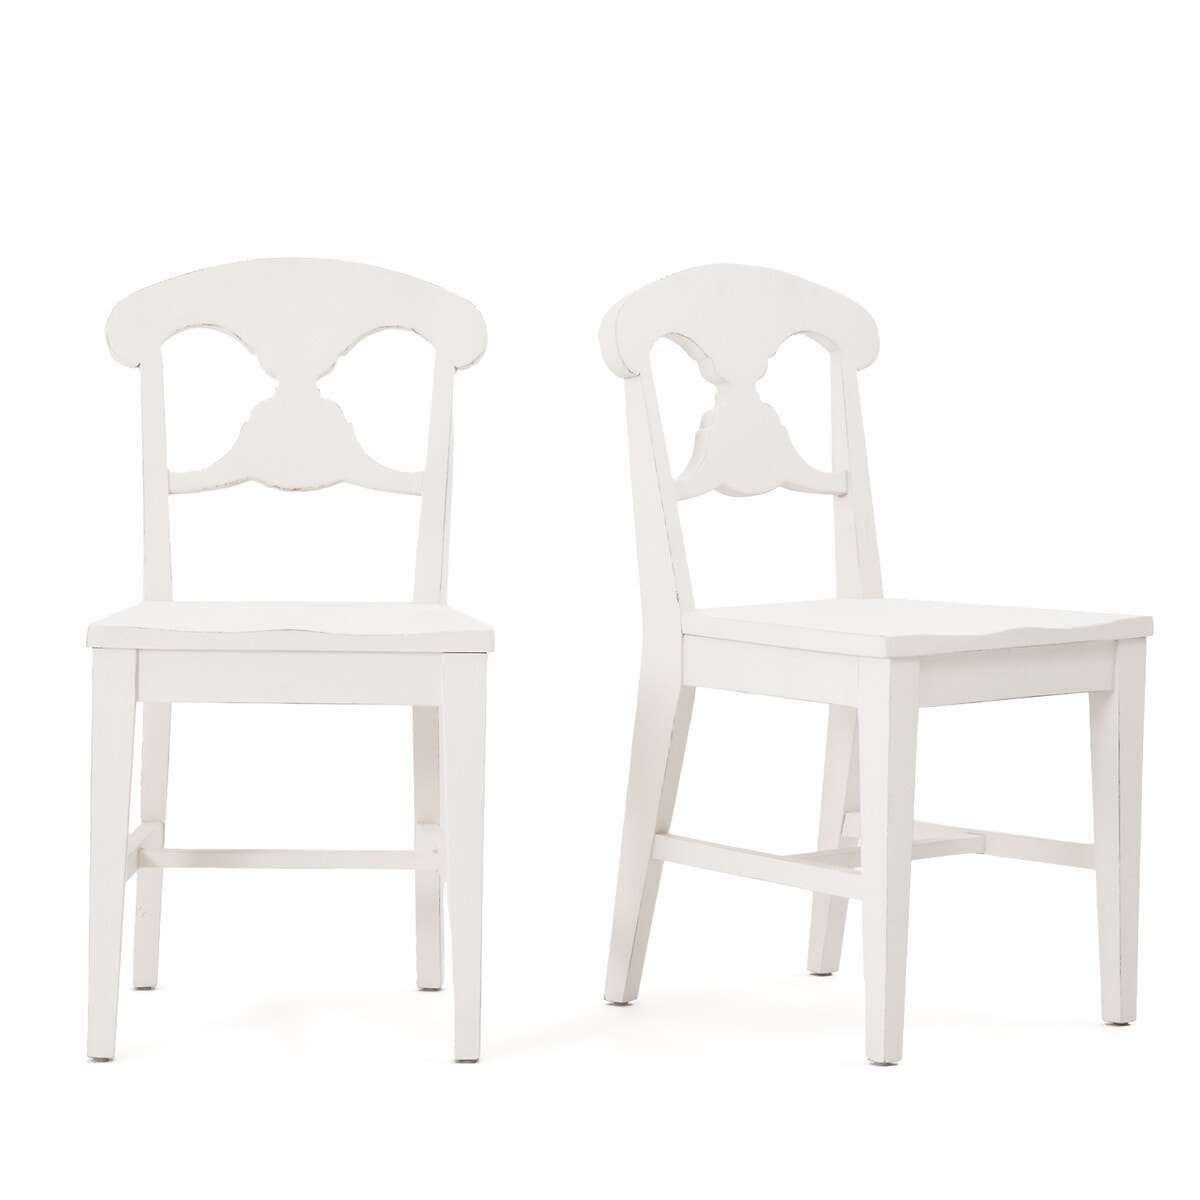 Σπίτι > Έπιπλα > Τραπεζαρία > Καρέκλες, σκαμπό, πάγκοι > Καρέκλες Σετ 2 καρέκλες με παλαιωμένη όψη Π46cm